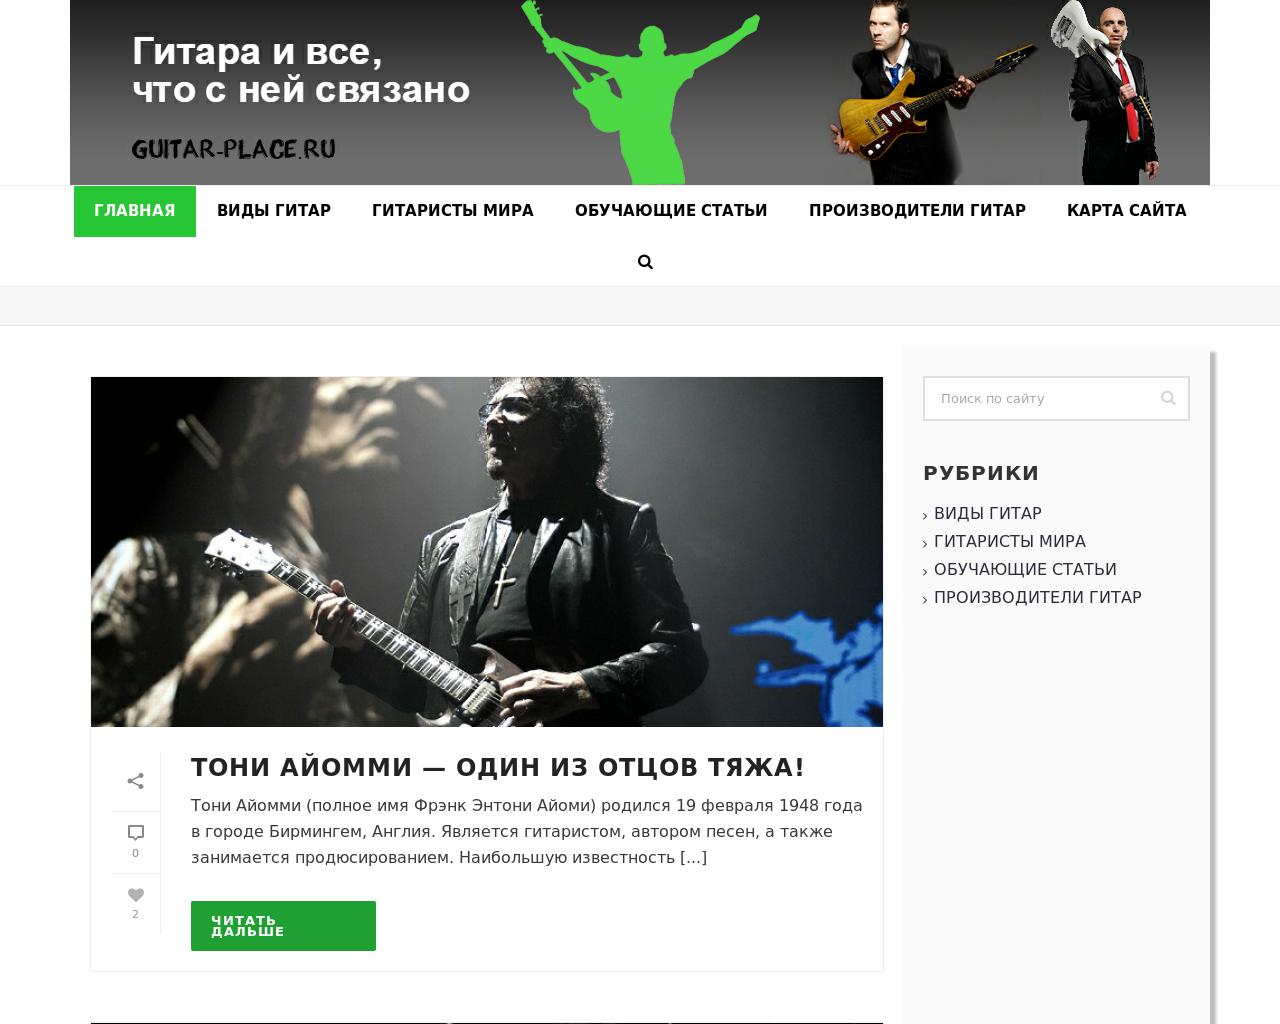 Изображение сайта guitar-place.ru в разрешении 1280x1024